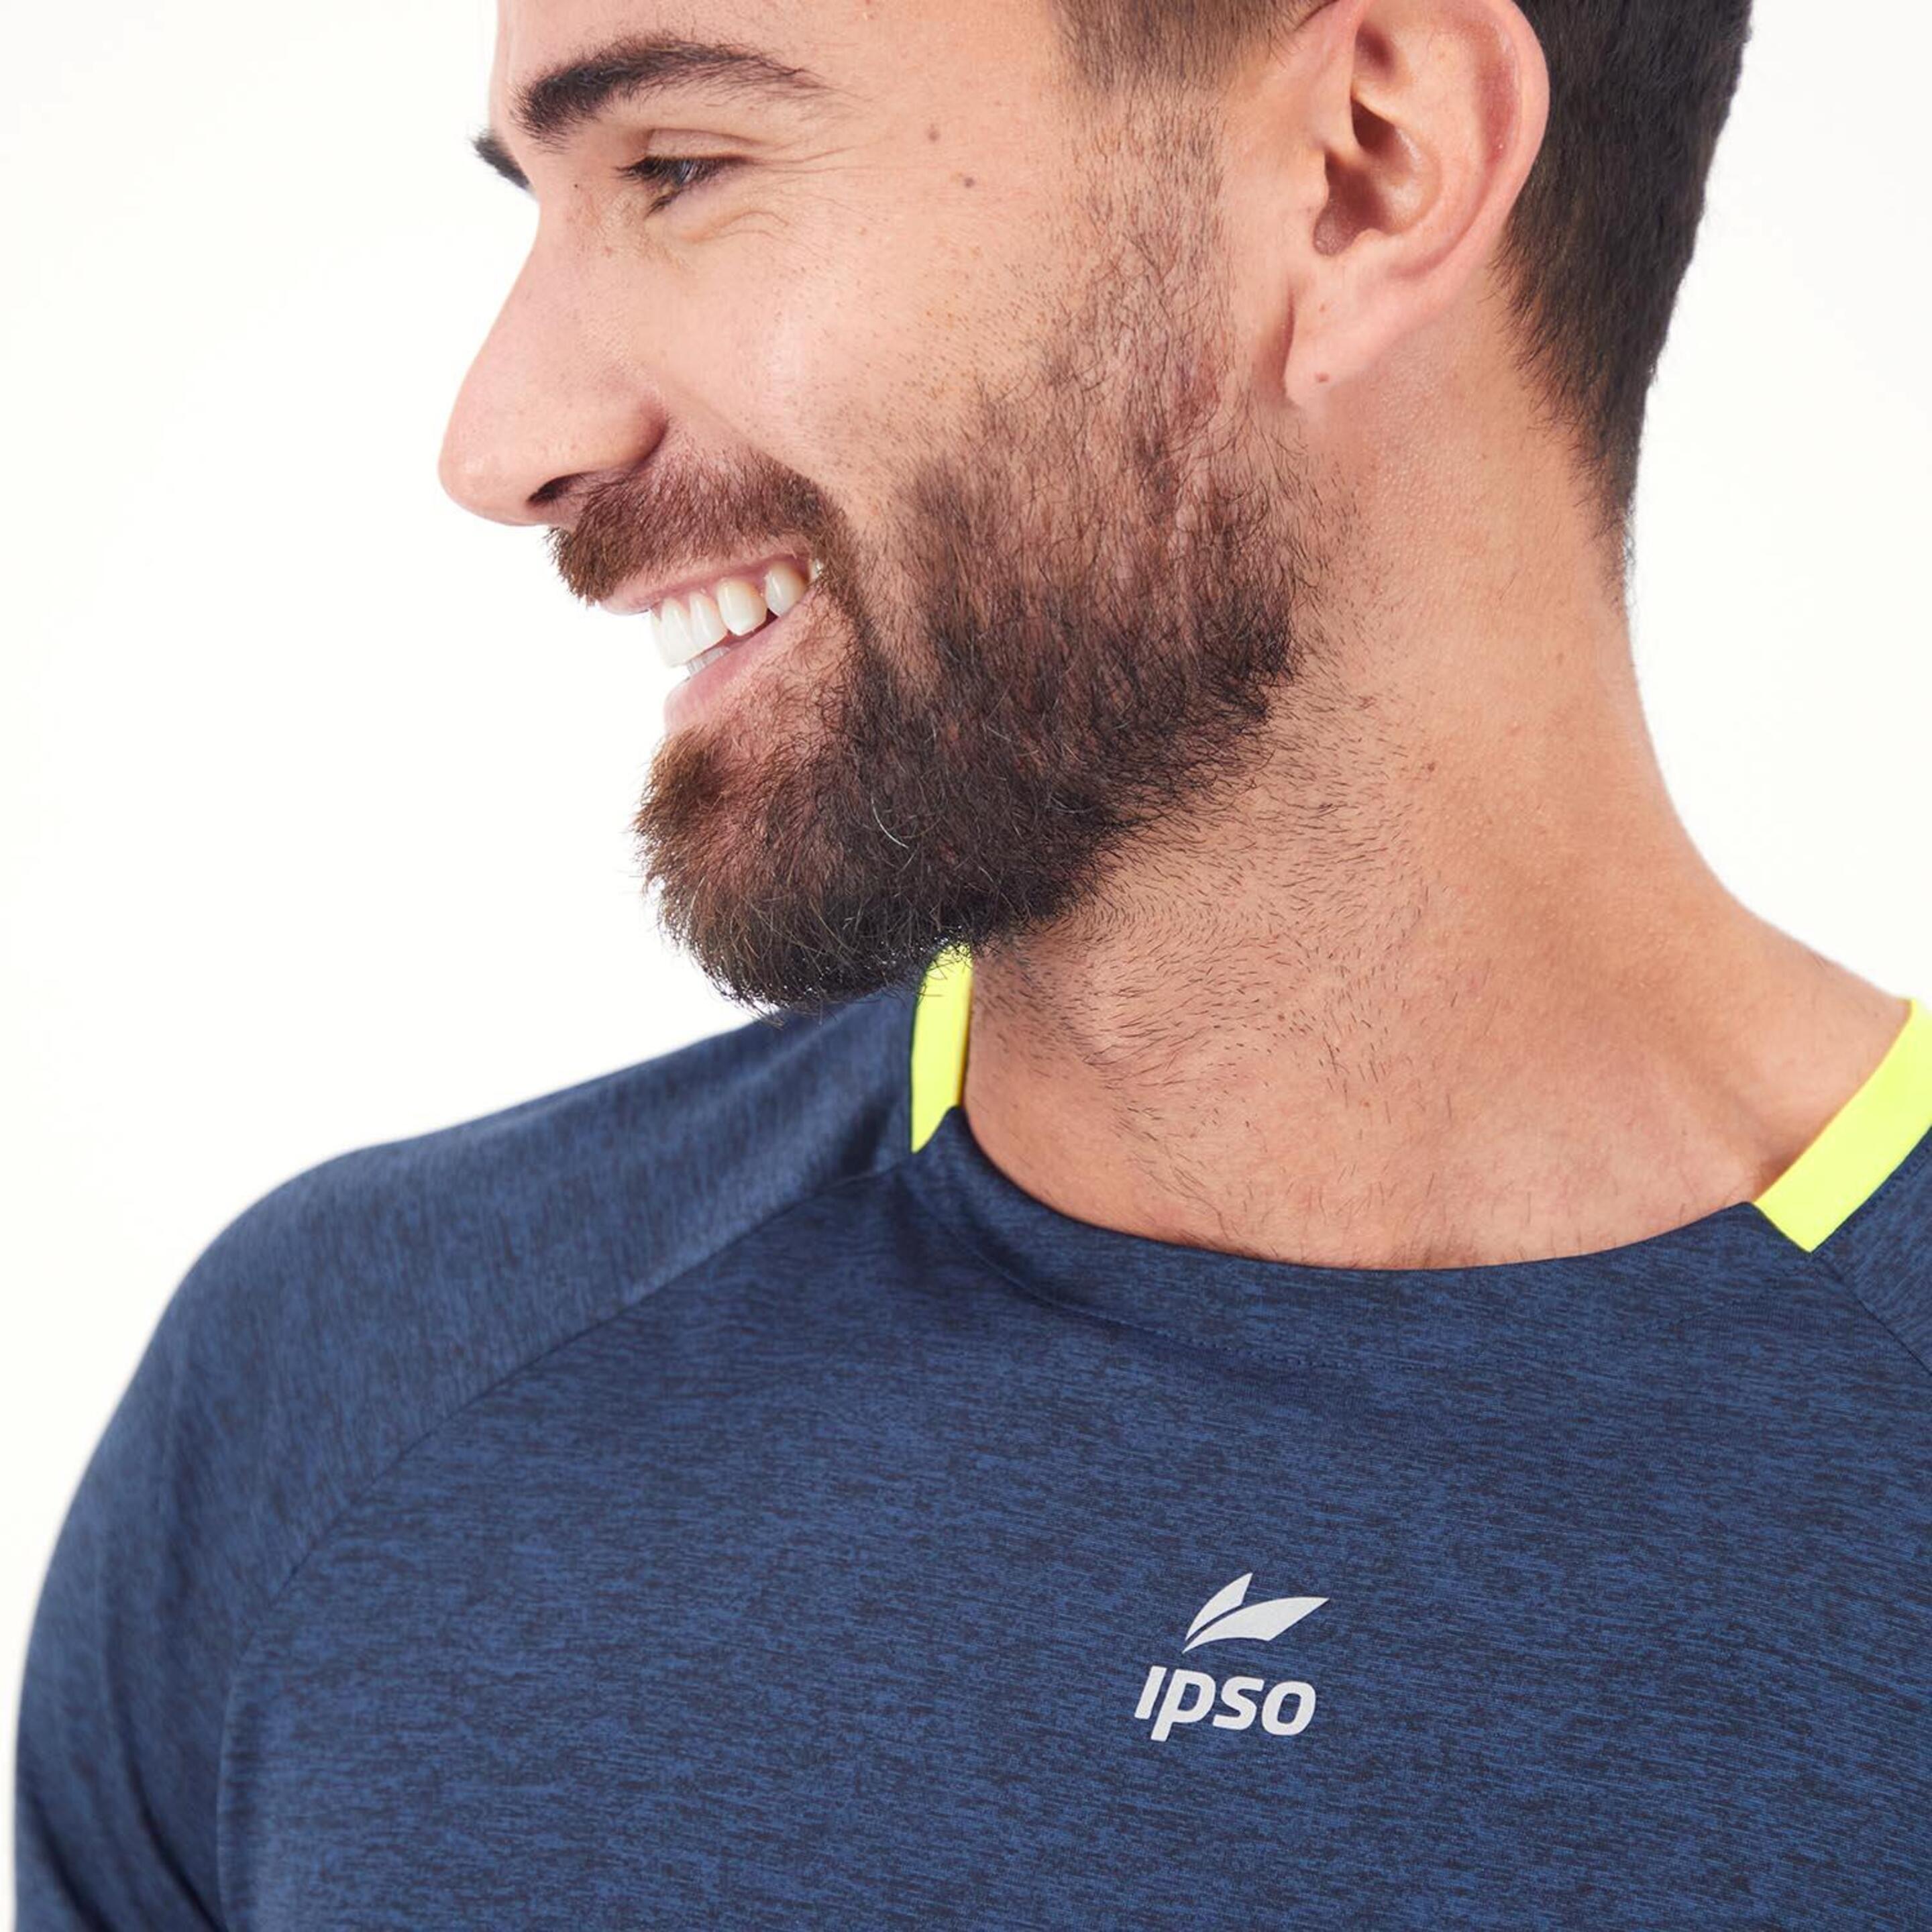 Ipso Combi 1 - Marino - Camiseta Running Hombre